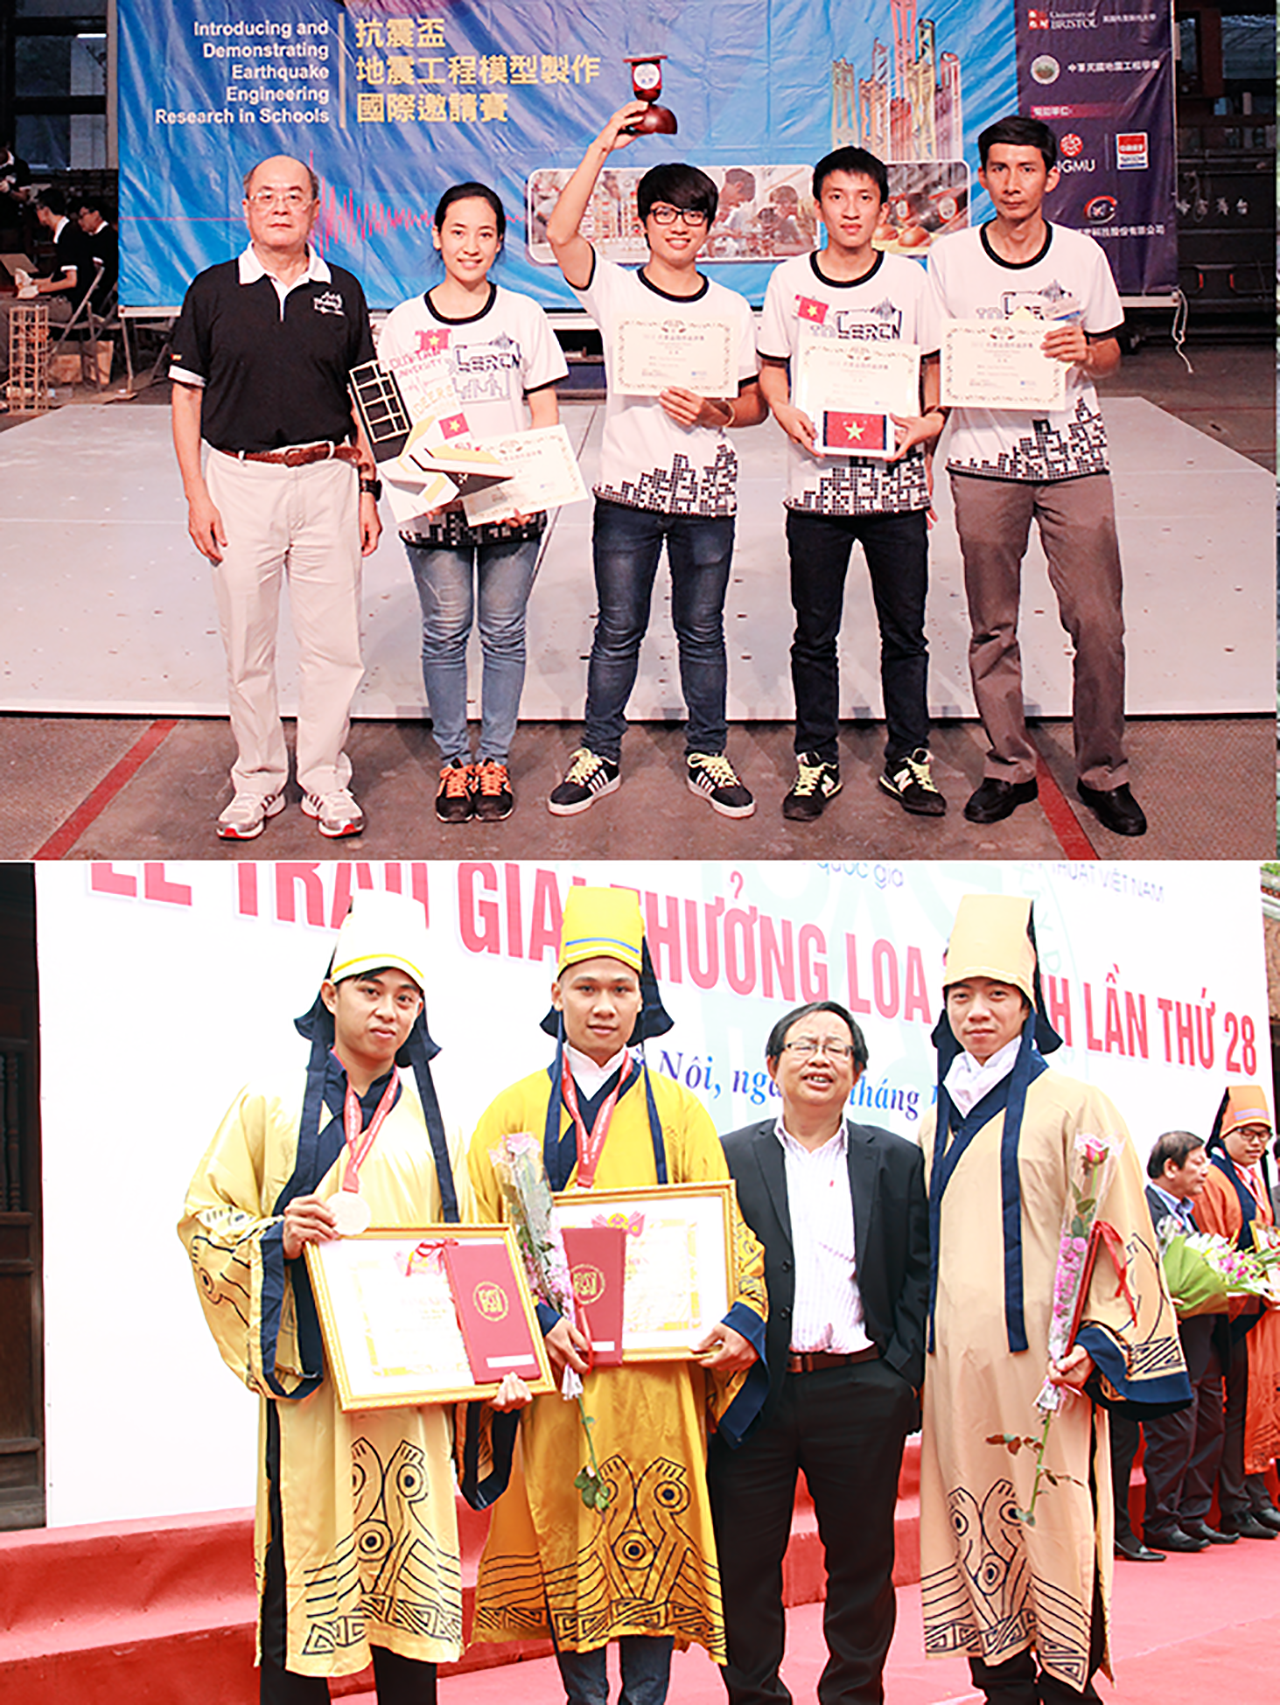 Sinh viên Duy Tân đoạt Cup Vô địch IDEERS châu Á - Thái Bình Dương năm 2014 tại Đài Loan (ảnh trên) và nhận giải Nhất Loa Thành 2010